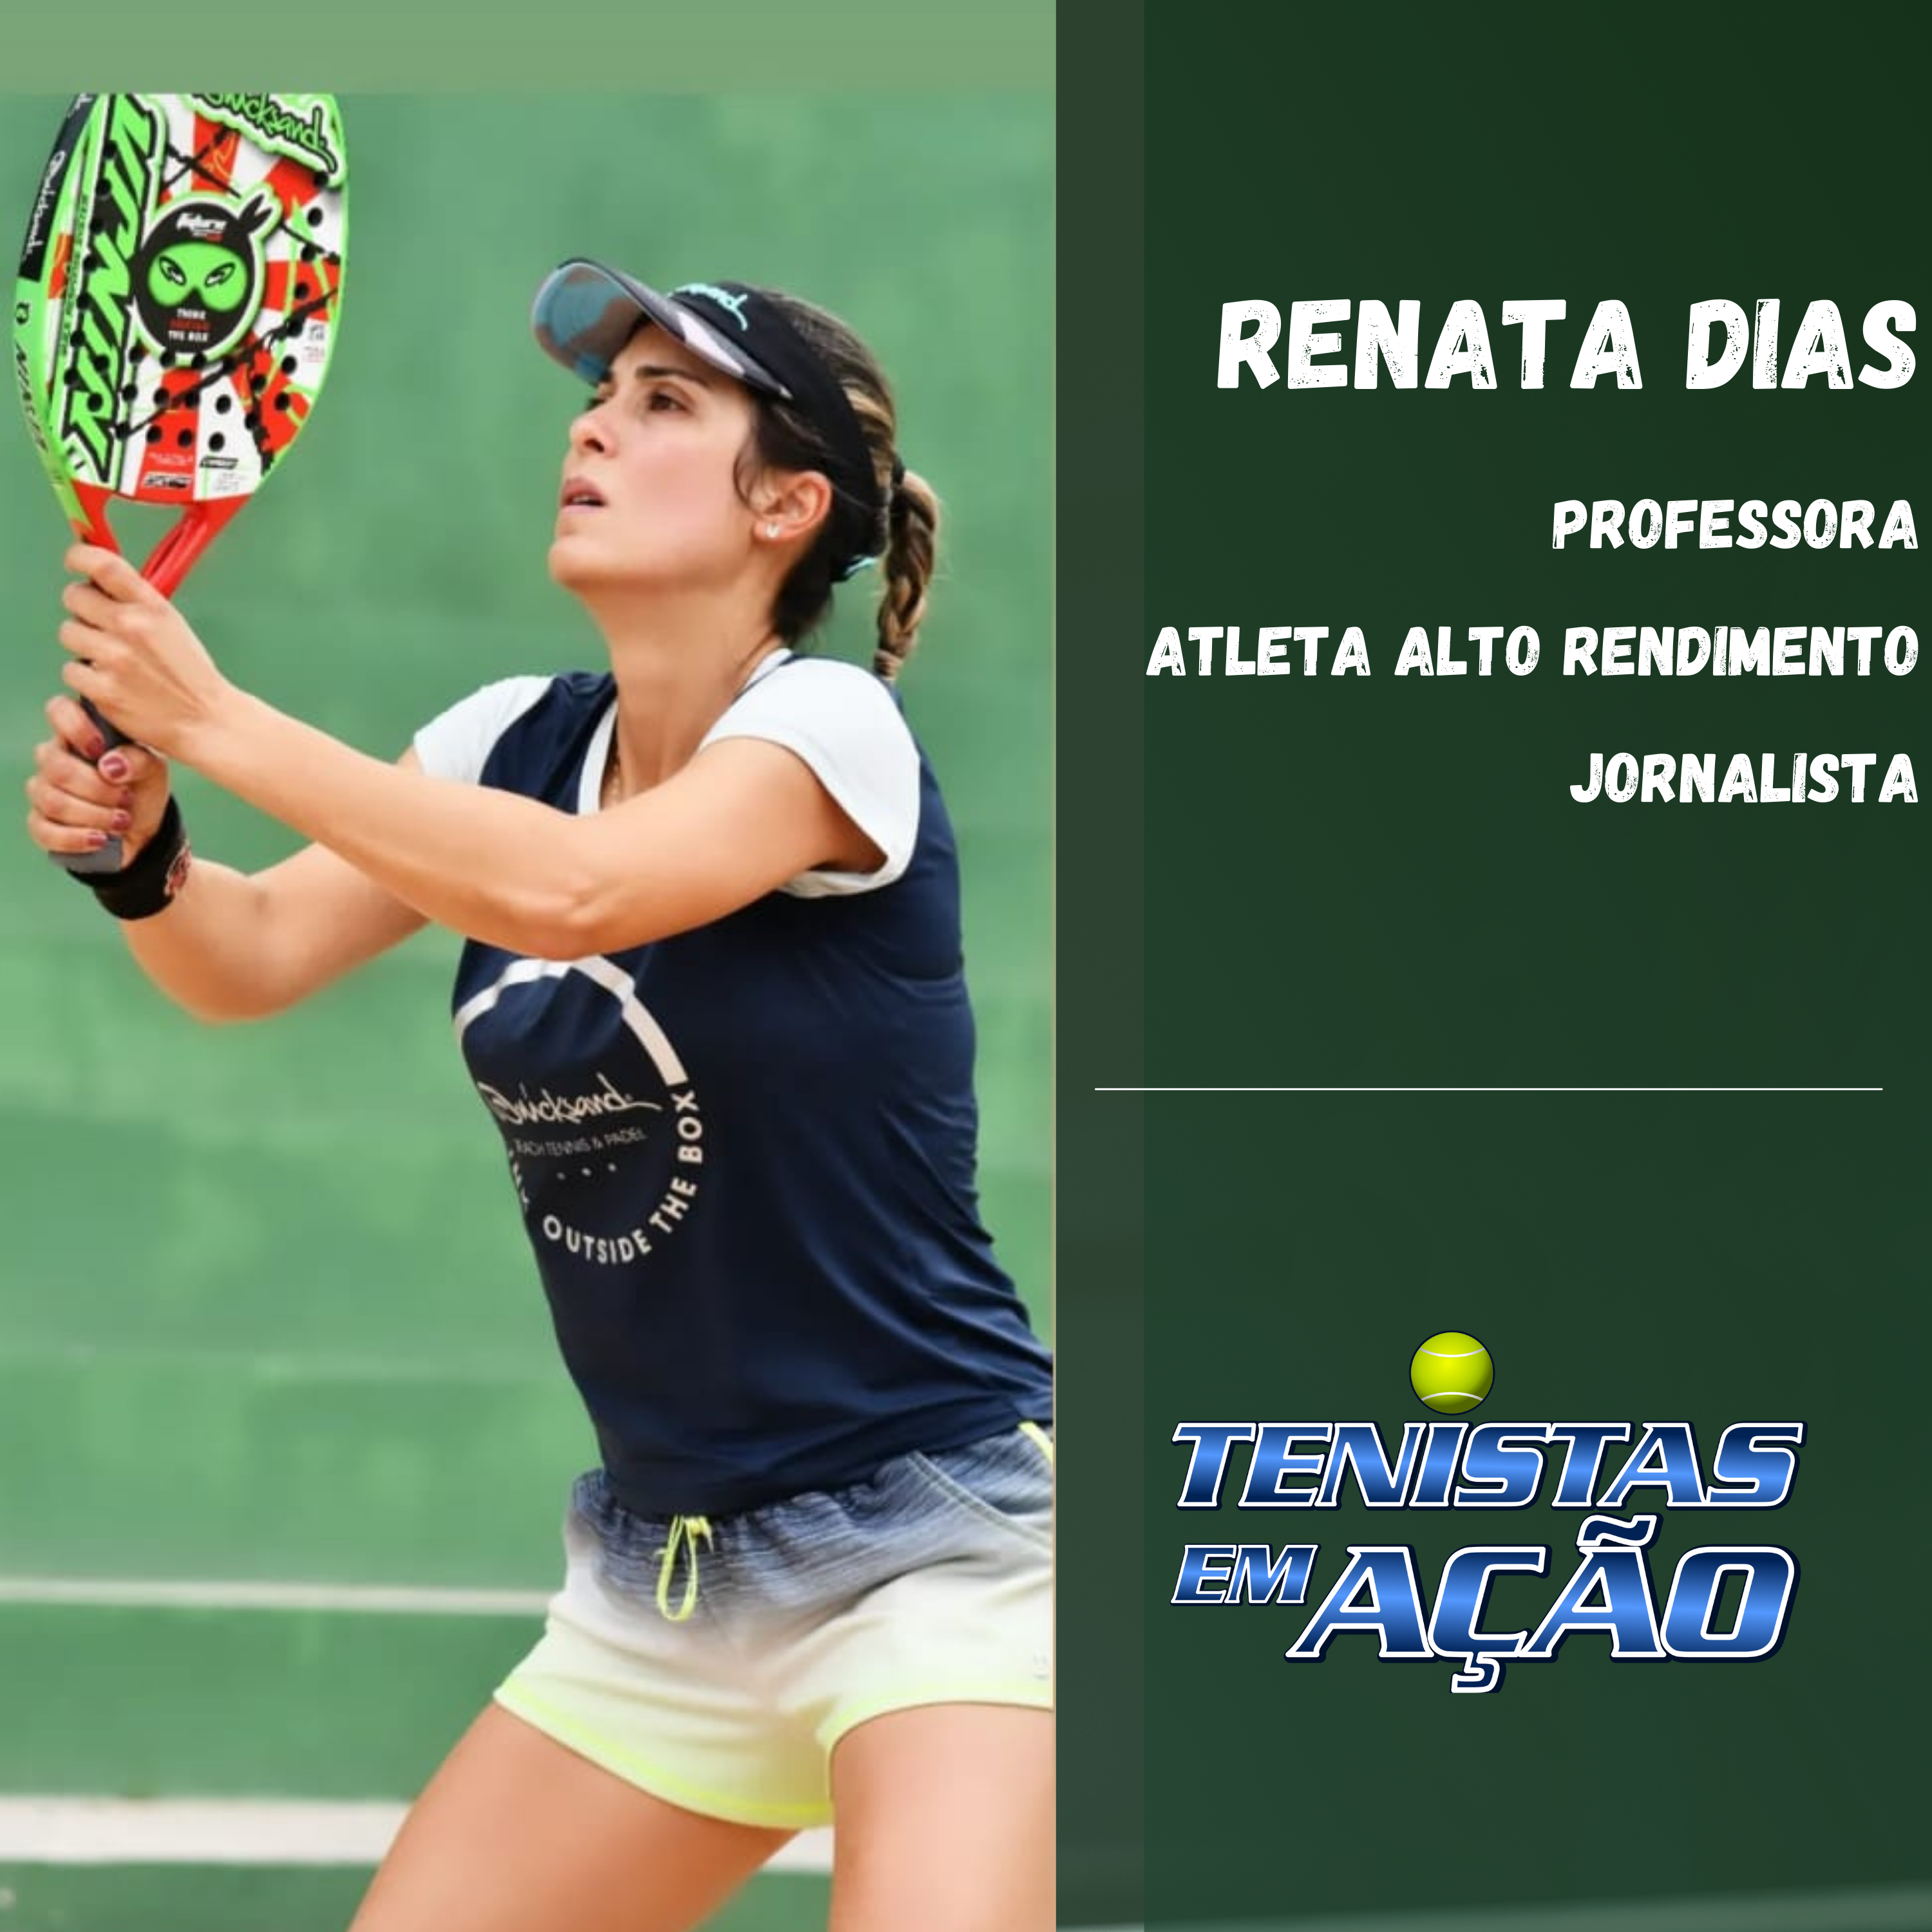 Renata Dias